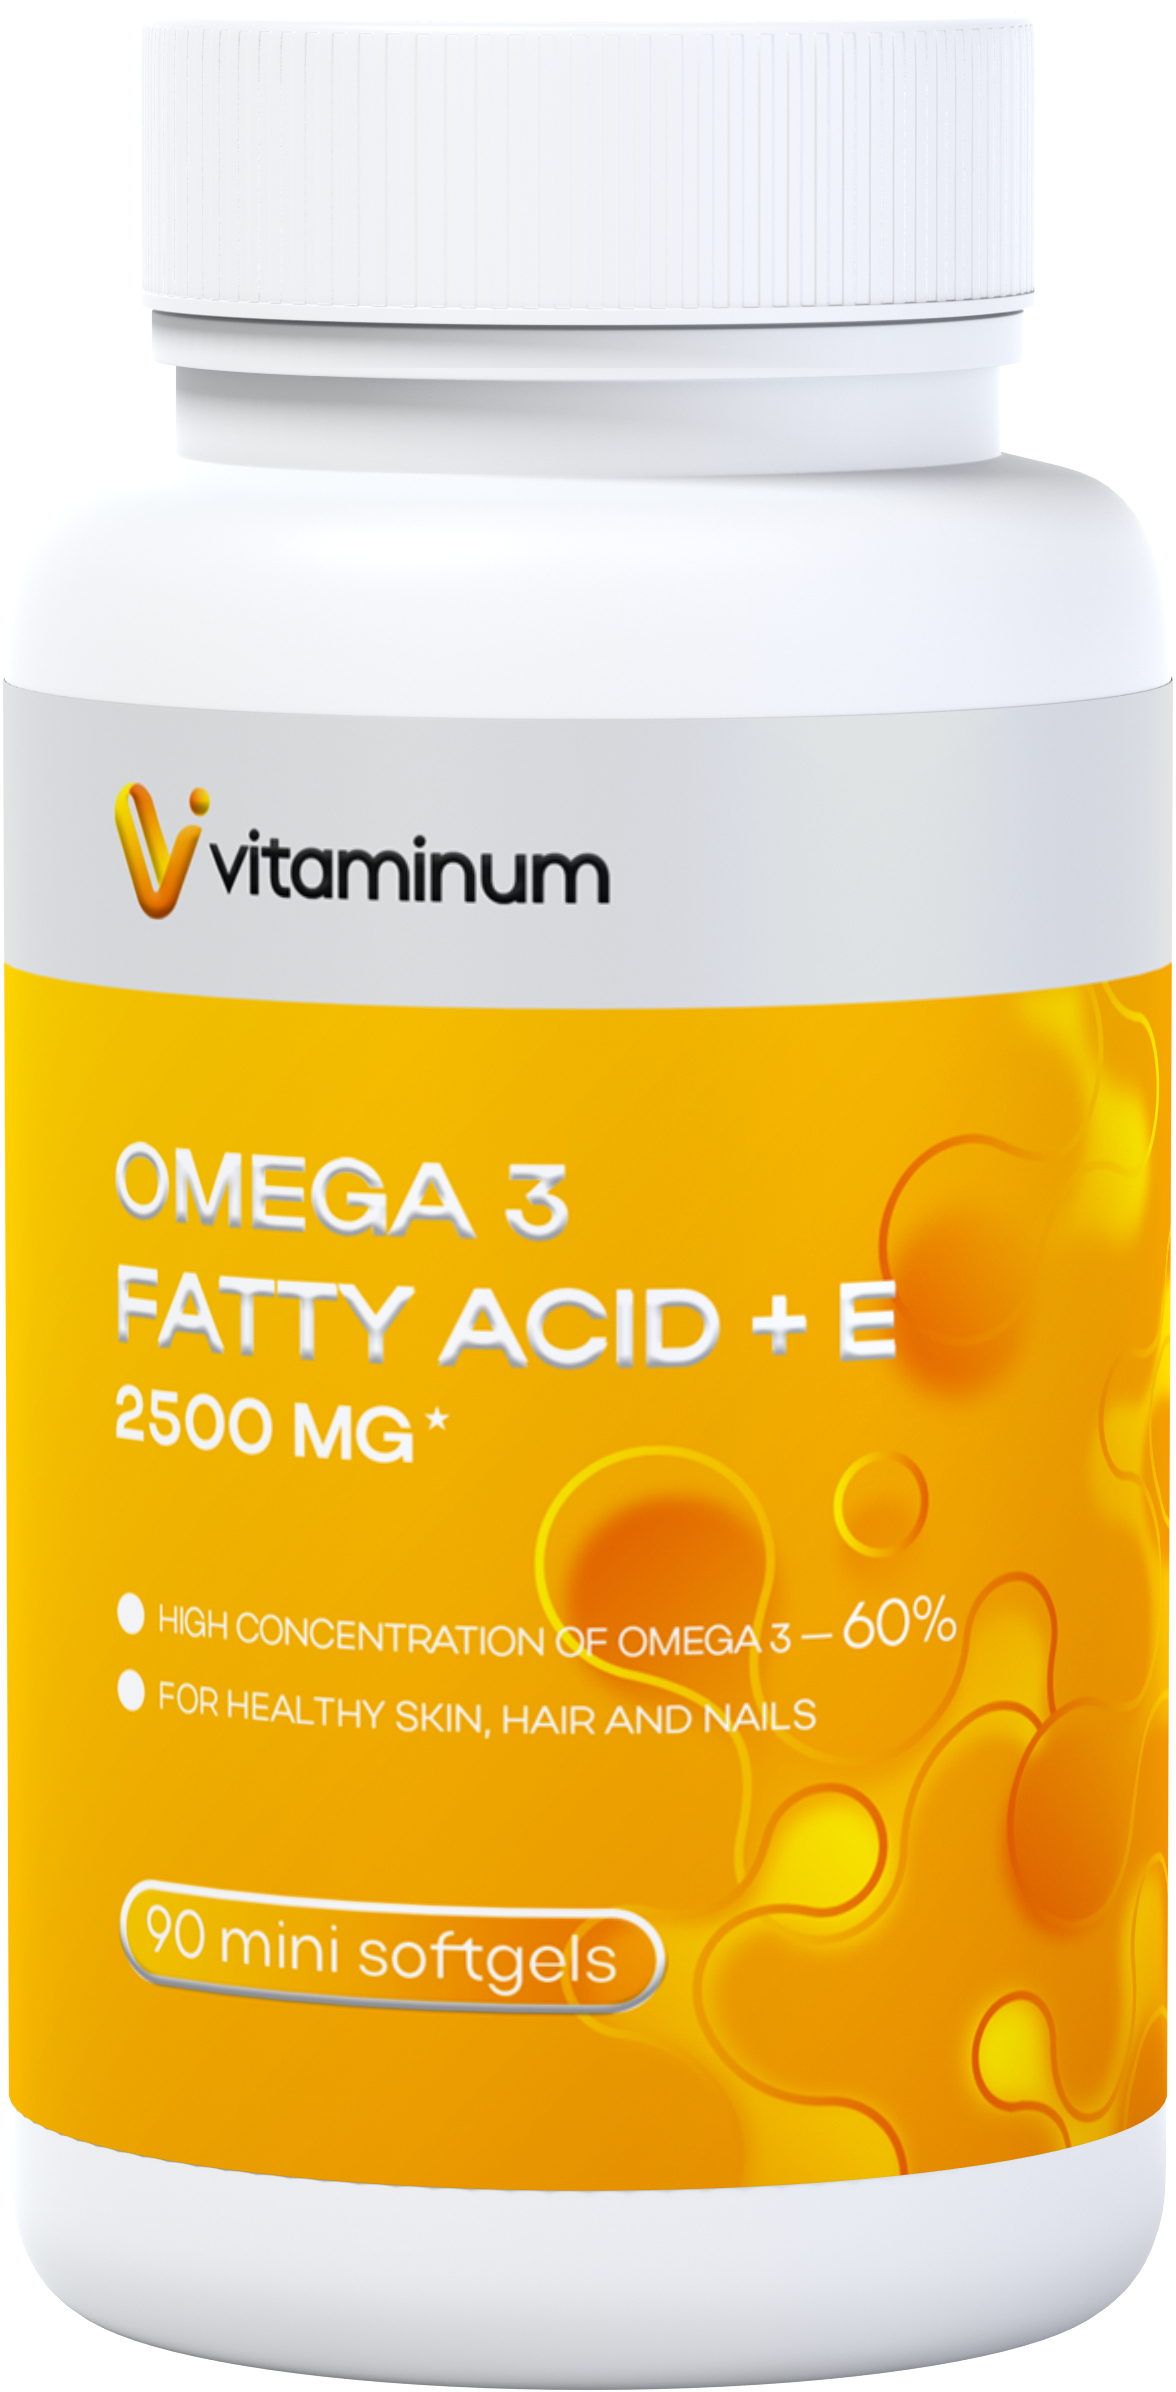  Vitaminum ОМЕГА 3 60% + витамин Е (2500 MG*) 90 капсул 700 мг   в Вятских Полянах